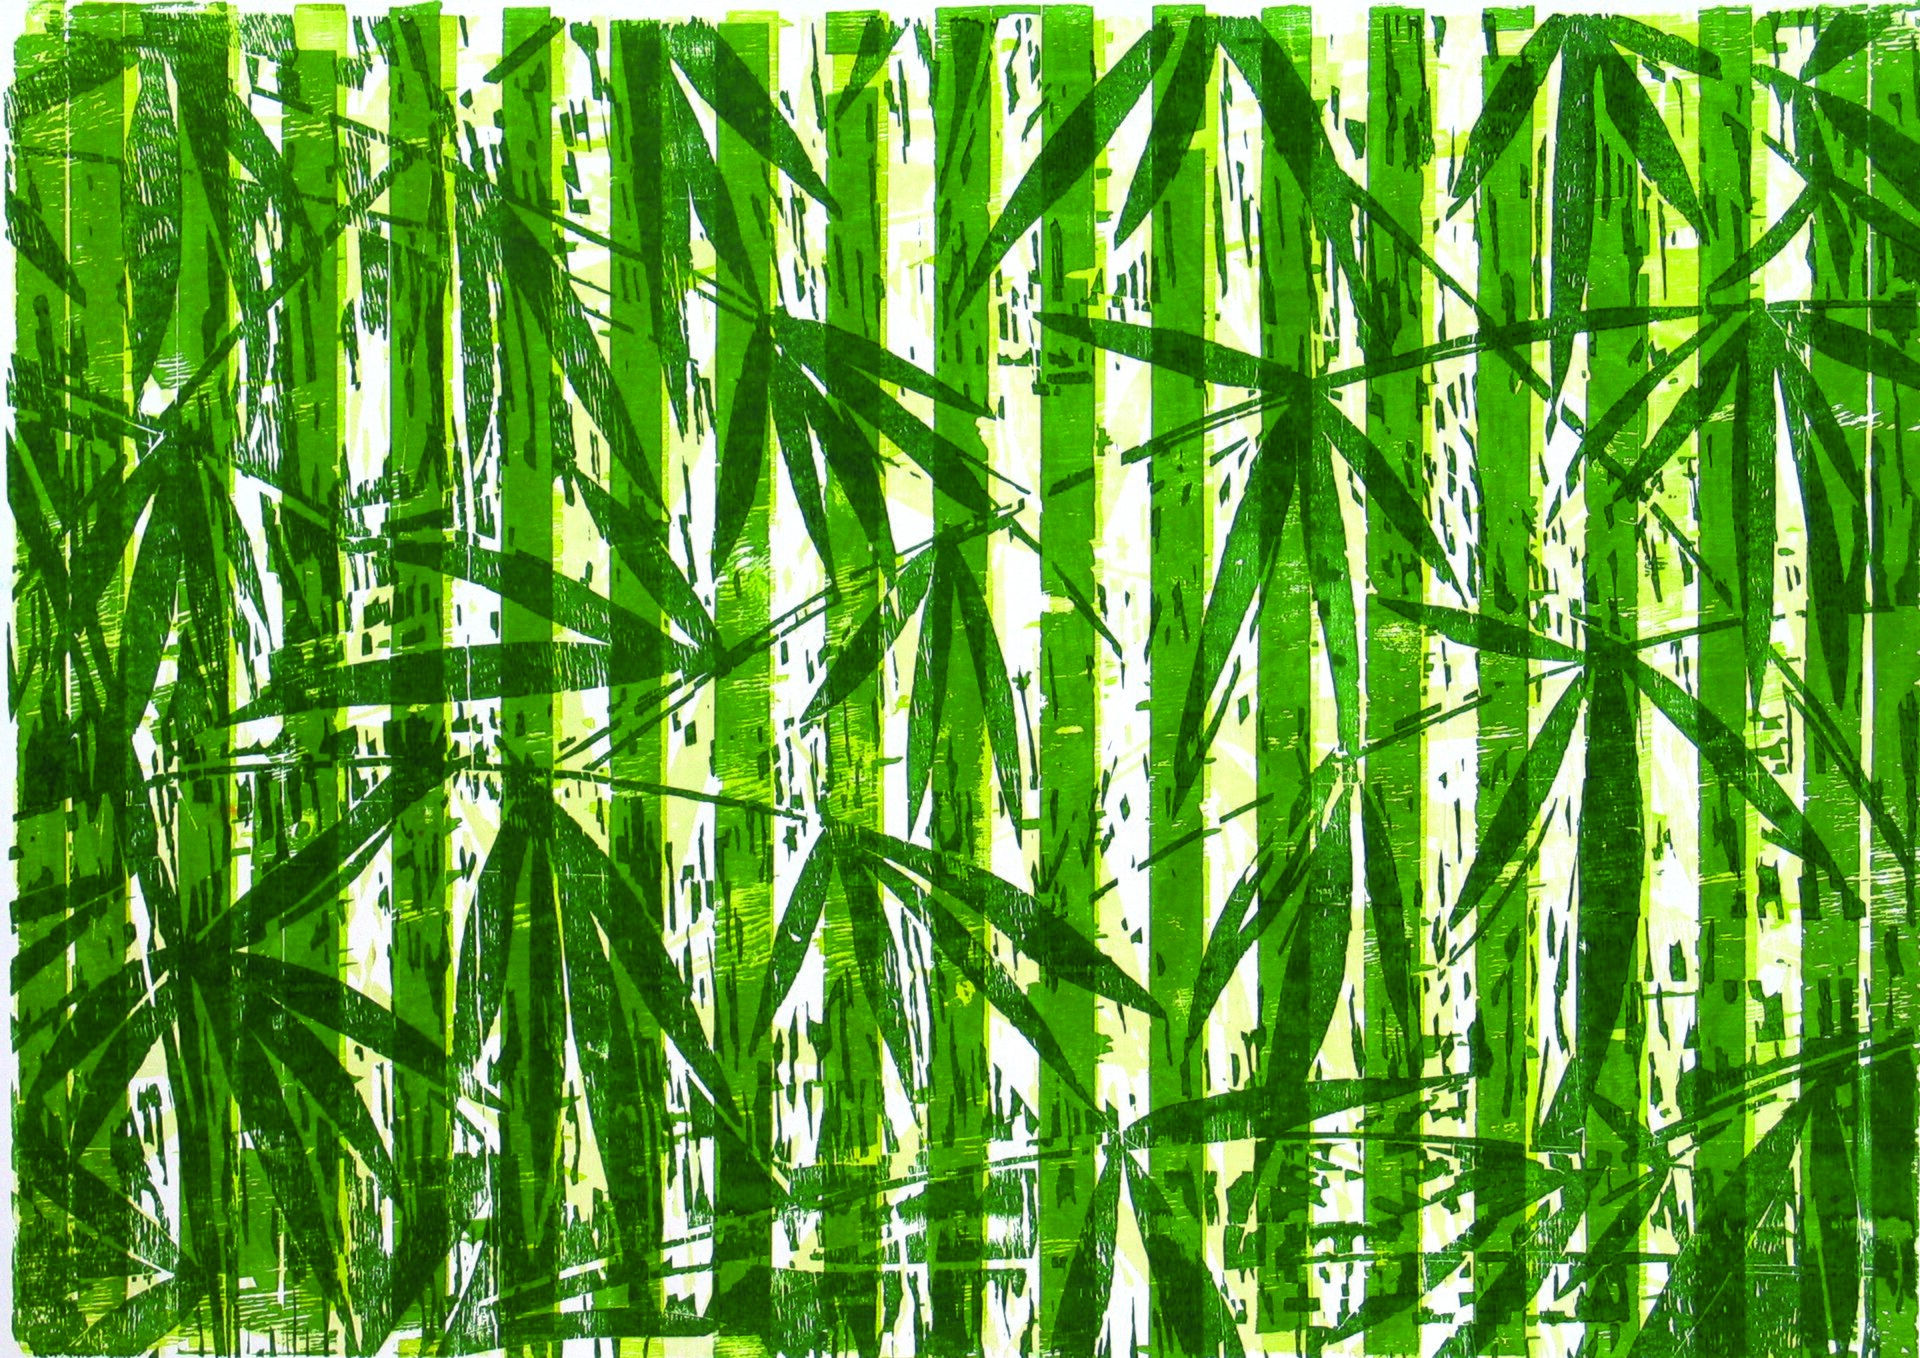 Ilustracja przedstawia obraz „Myitkyina” autorstwa Michała Rygielskiego. Praca łączy w sobie abstrakcję z malarstwem figuratywnym. Wykonana w zielono-żółtej tonacji na białym tle kompozycja składa się z pionowych, jasno-zielonych pasów o płaskim kolorze, gdzieniegdzie poprzecieranych białymi i zielono-żółtymi kreskami, na które autor nałożył motywy ciemno-zielonych roślin o długich liściach i wąskich łodygach. Praca przywodzi na myśl rozświetlony słońcem las tropikalny. Monochromatyczny obraz utrzymany jest w wąskiej, ciepłej gamie zieleni.